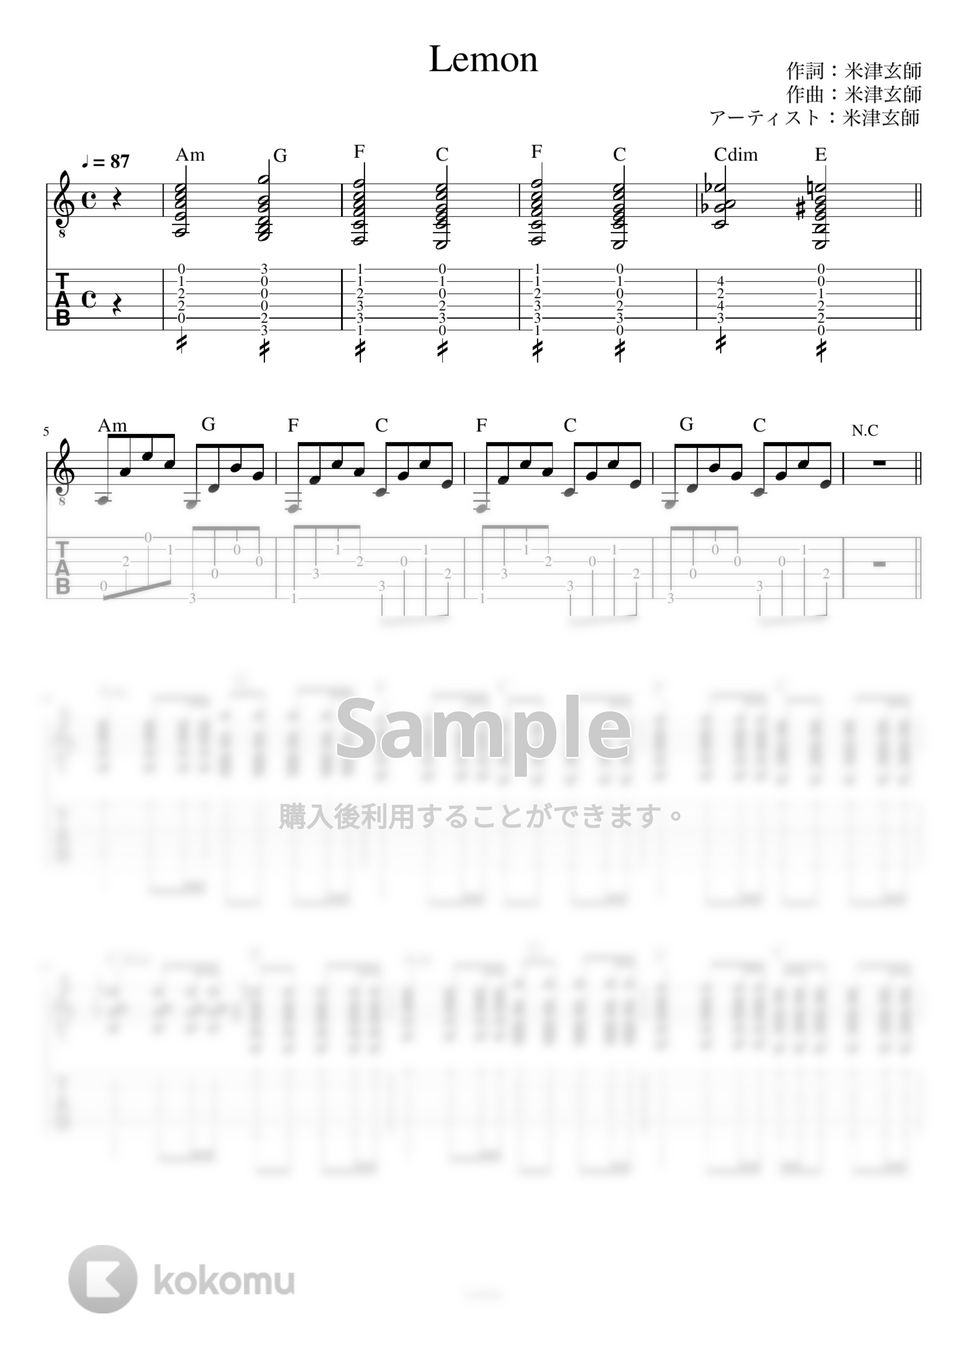 米津玄師 - Lemon (リードギター) by J-ROCKチャンネル